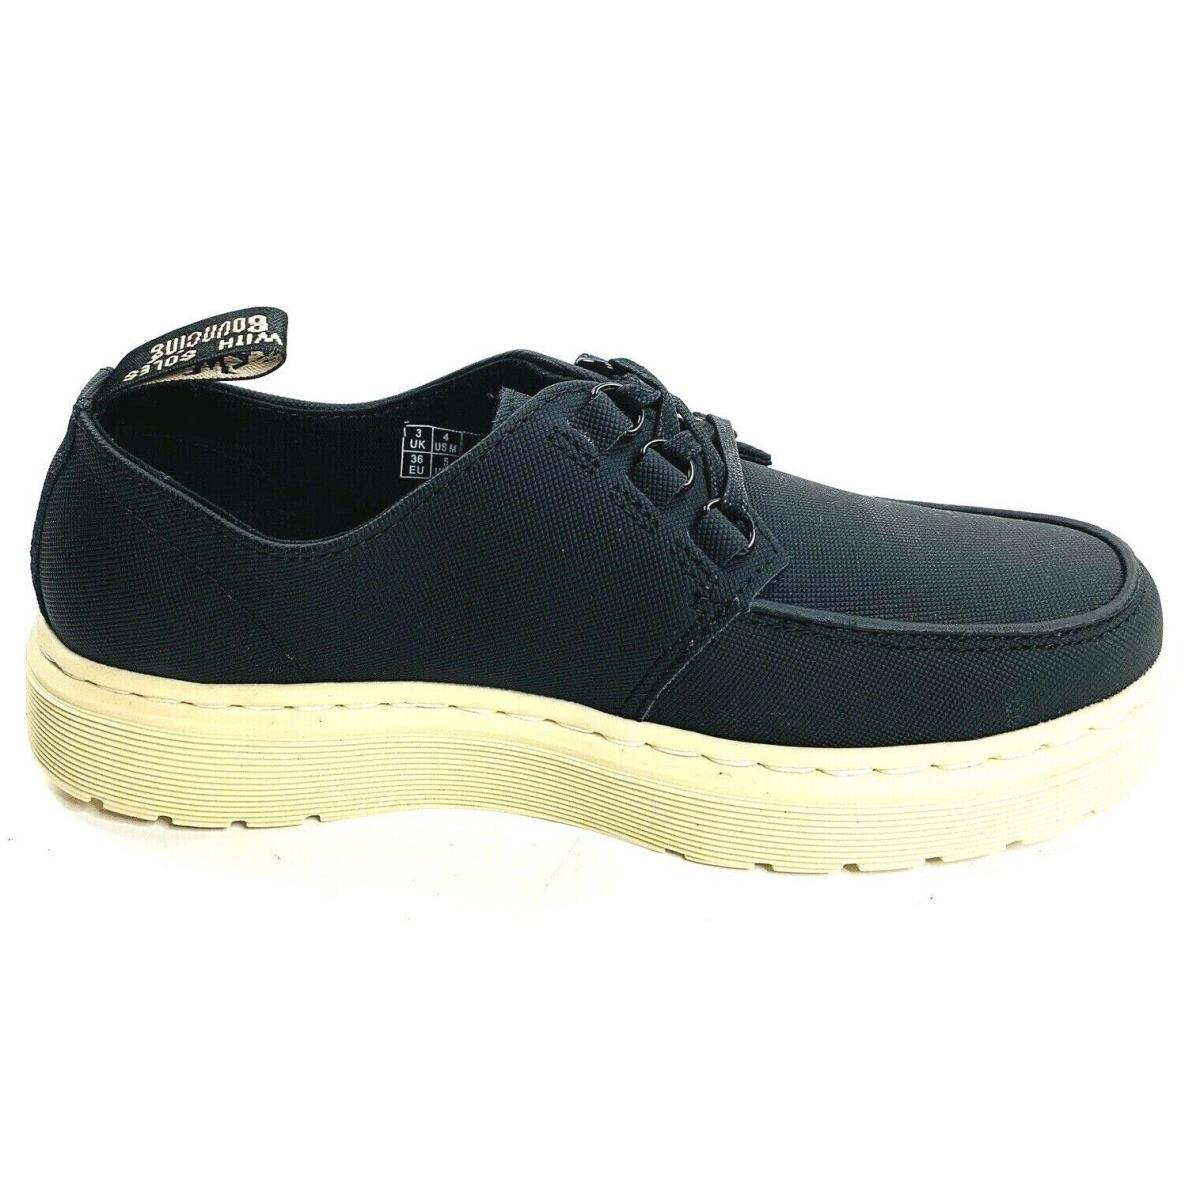 Dr. Martens Walden Black Casual Shoes Ladies 5 Mens 4